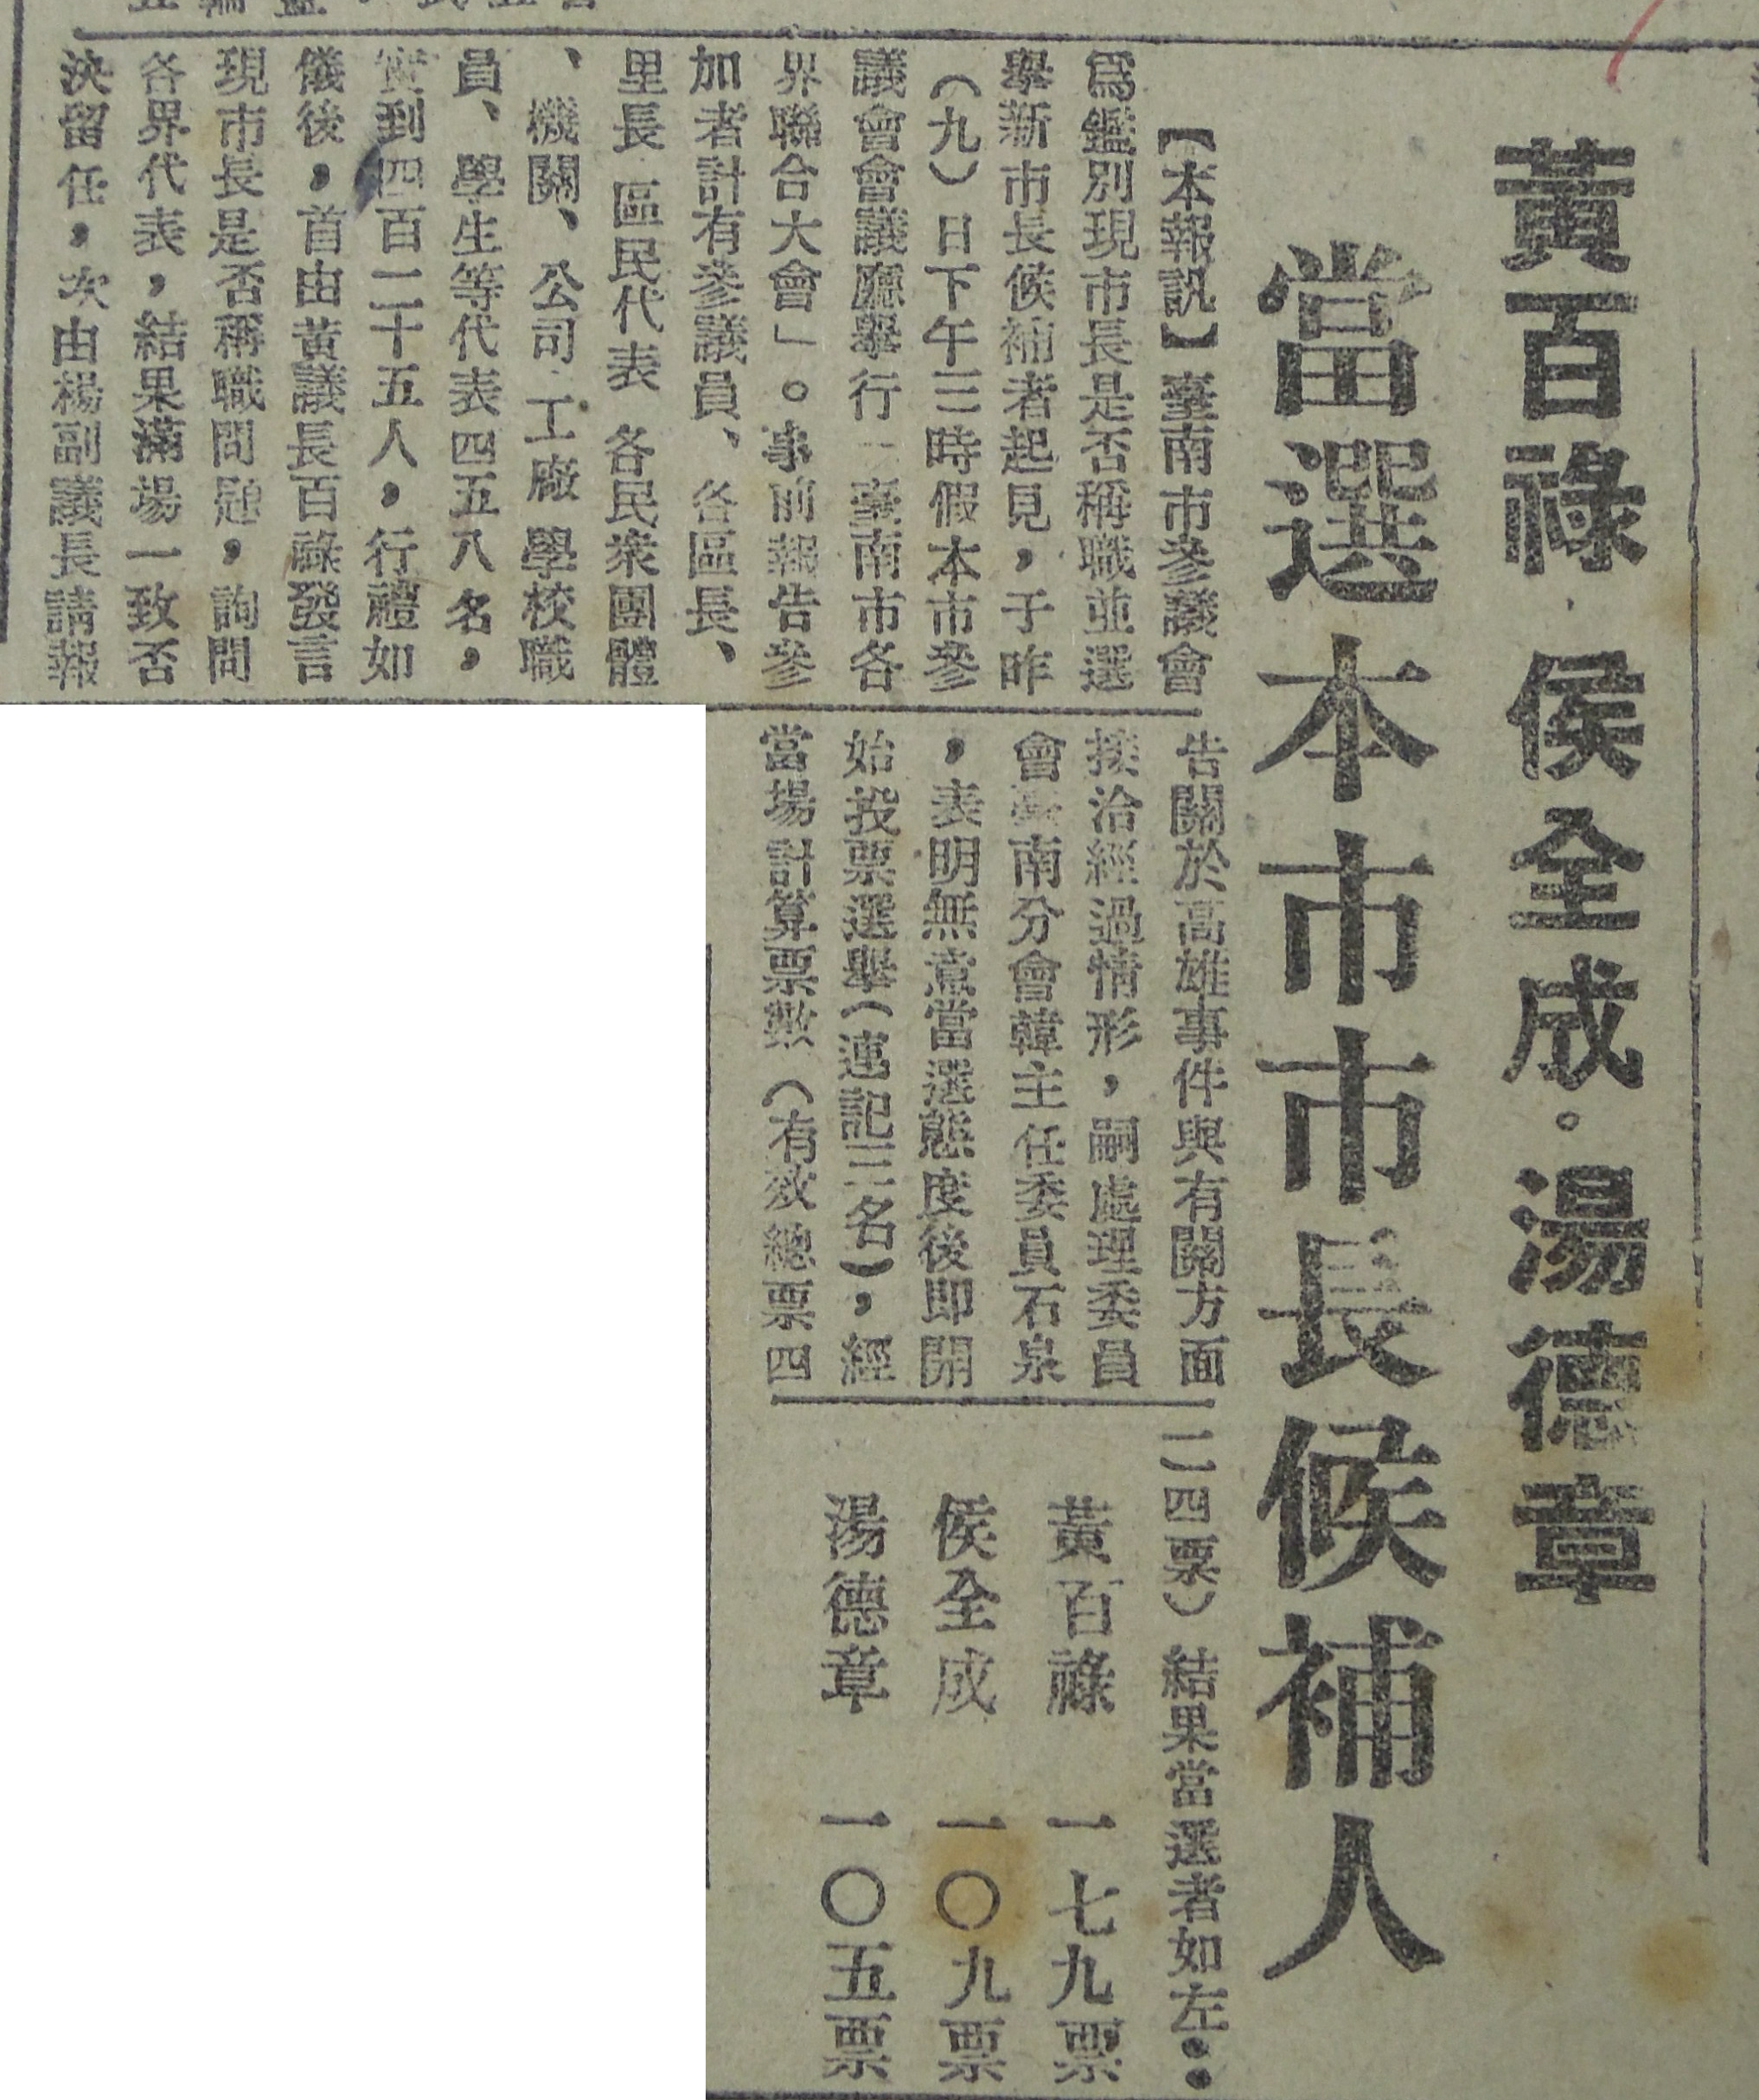 湯德章相關新聞報導（《中華日報》，1947年3月10、14日）